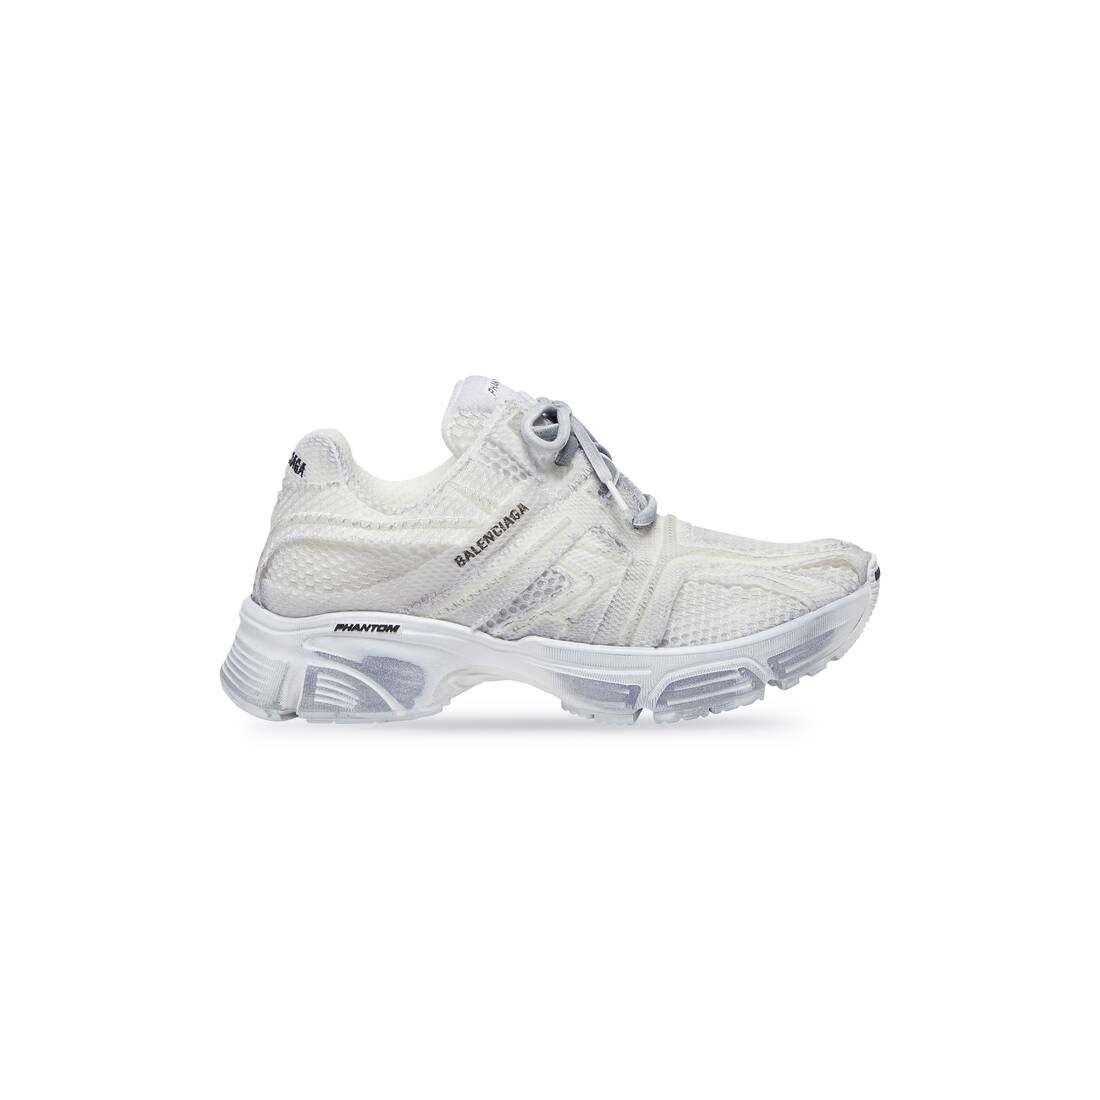 Men's Phantom Sneaker Washed in White - 1